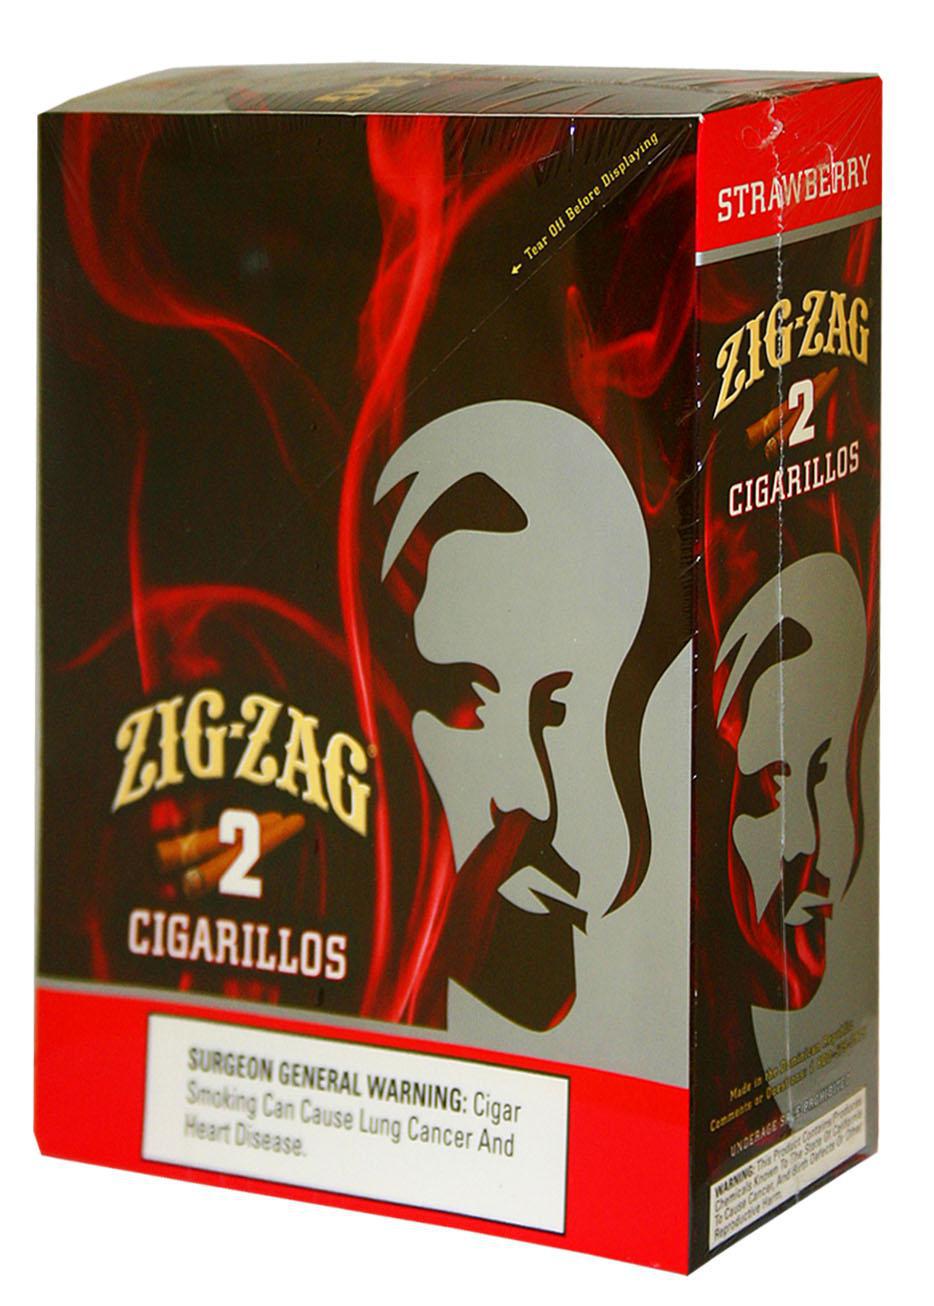 Zig Zag Wraps -  Awesomevapestore